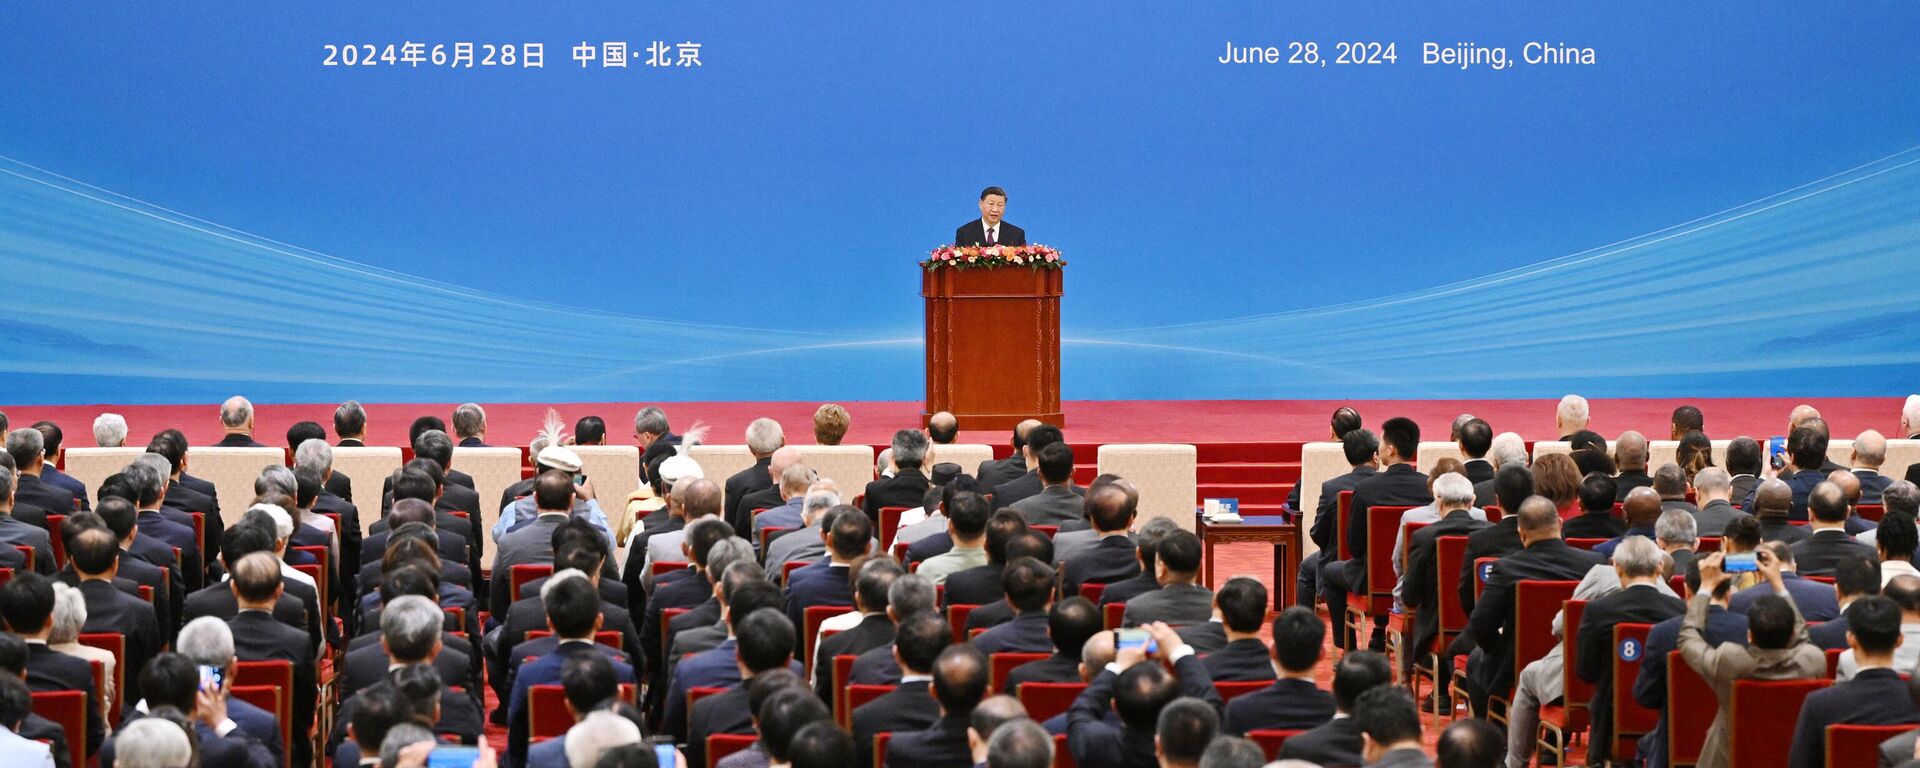 O presidente chinês Xi Jinping discursa em uma cerimônia que marca o 70º aniversário dos Cinco Princípios da Coexistência Pacífica, no Grande Salão do Povo em Pequim, em 28 de junho de 2024 - Sputnik Brasil, 1920, 28.06.2024